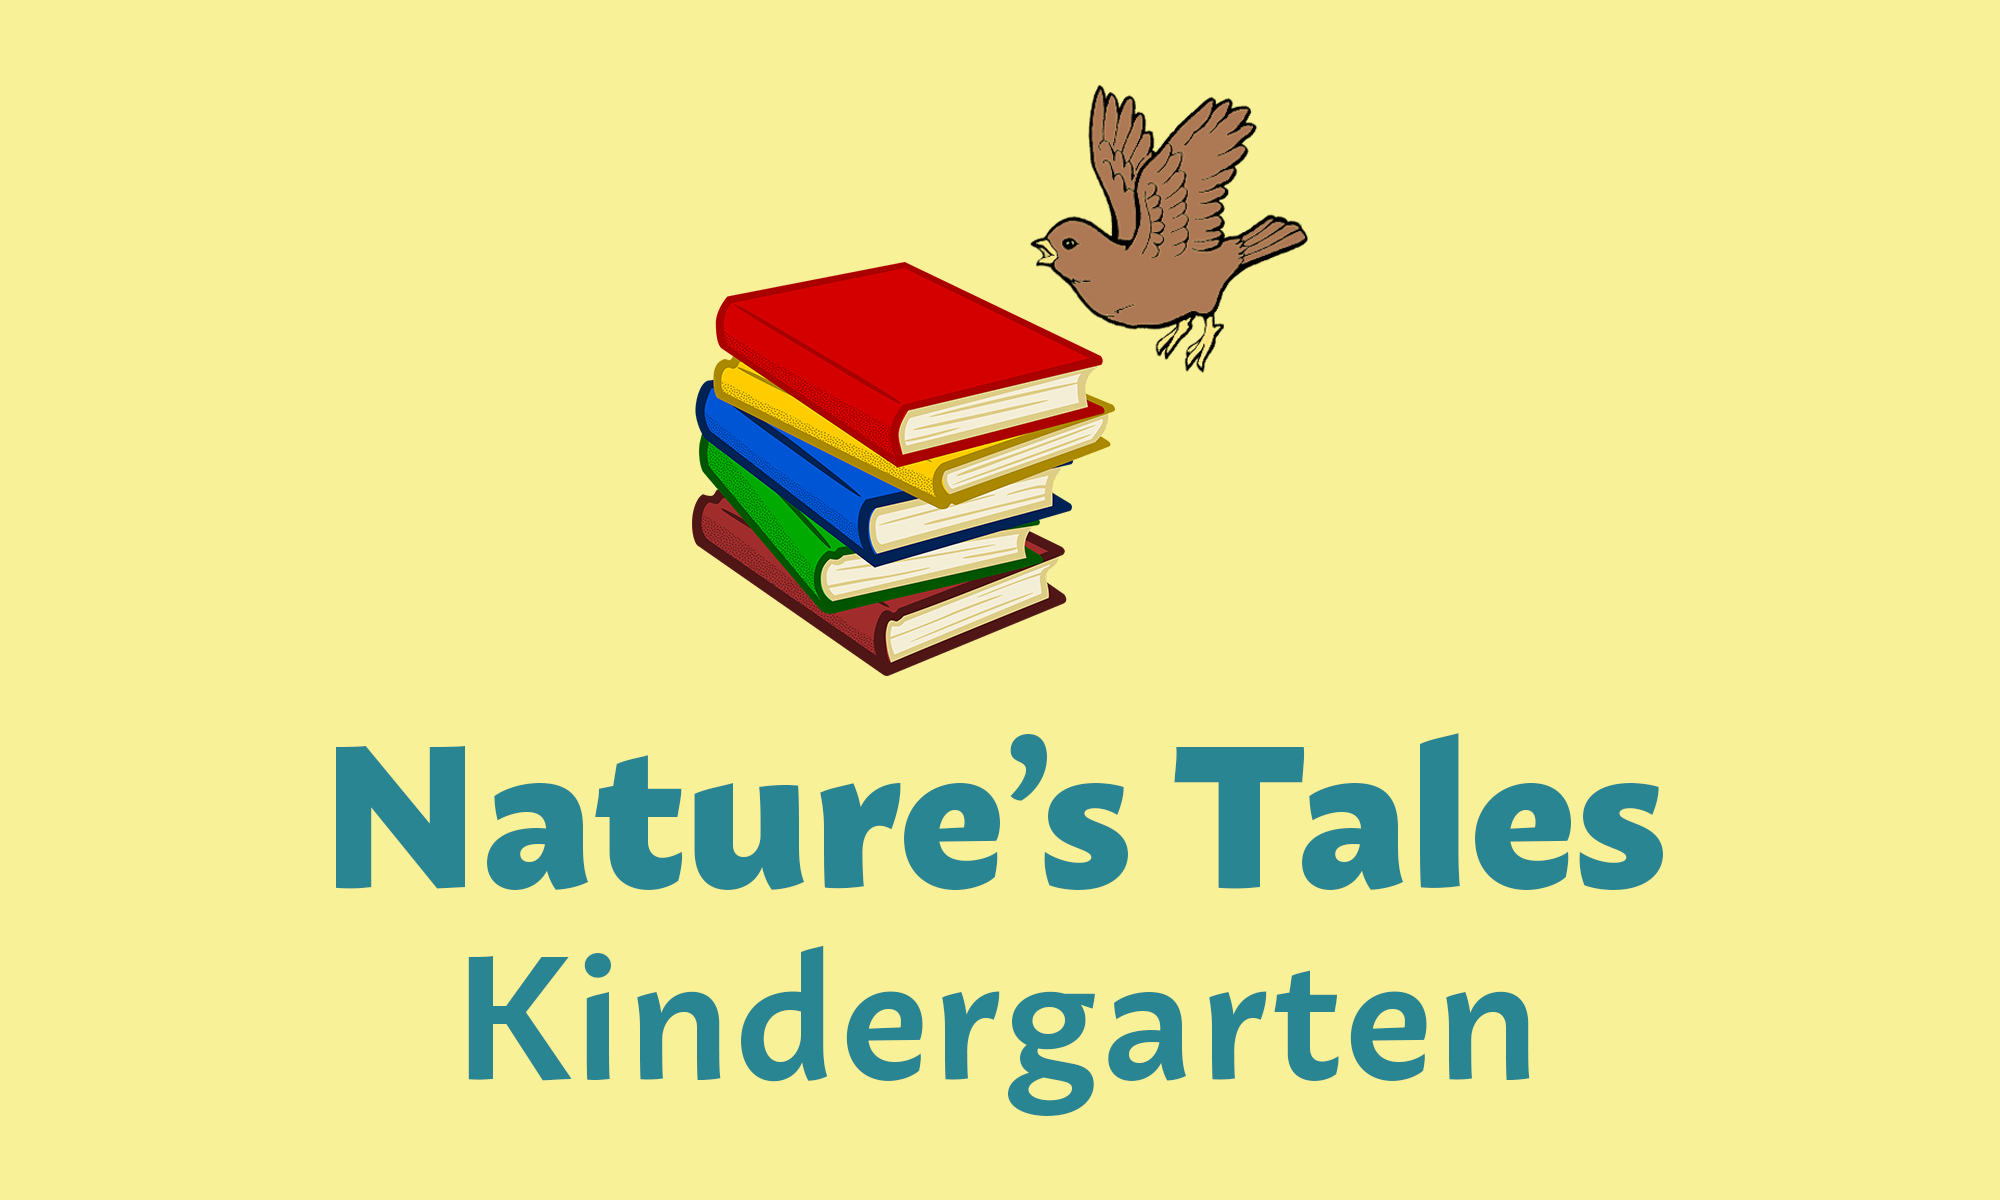 Natures Tales Kindergarten